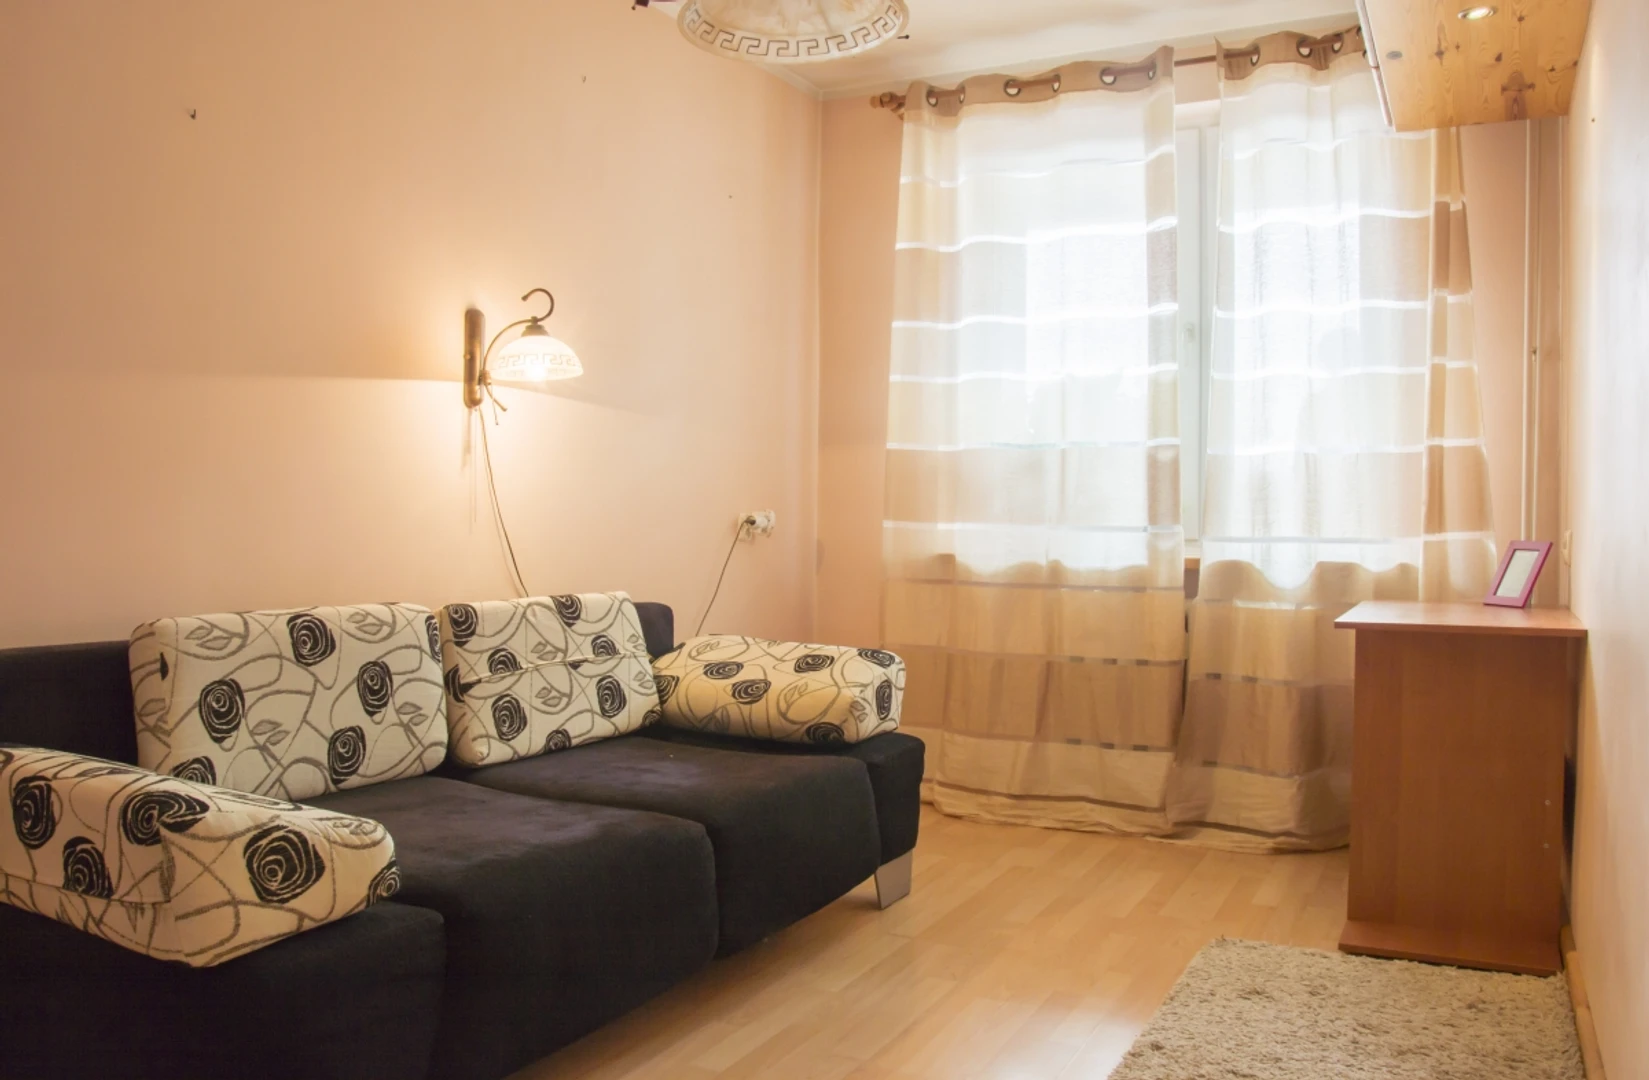 Alquiler de habitaciones por meses en białystok